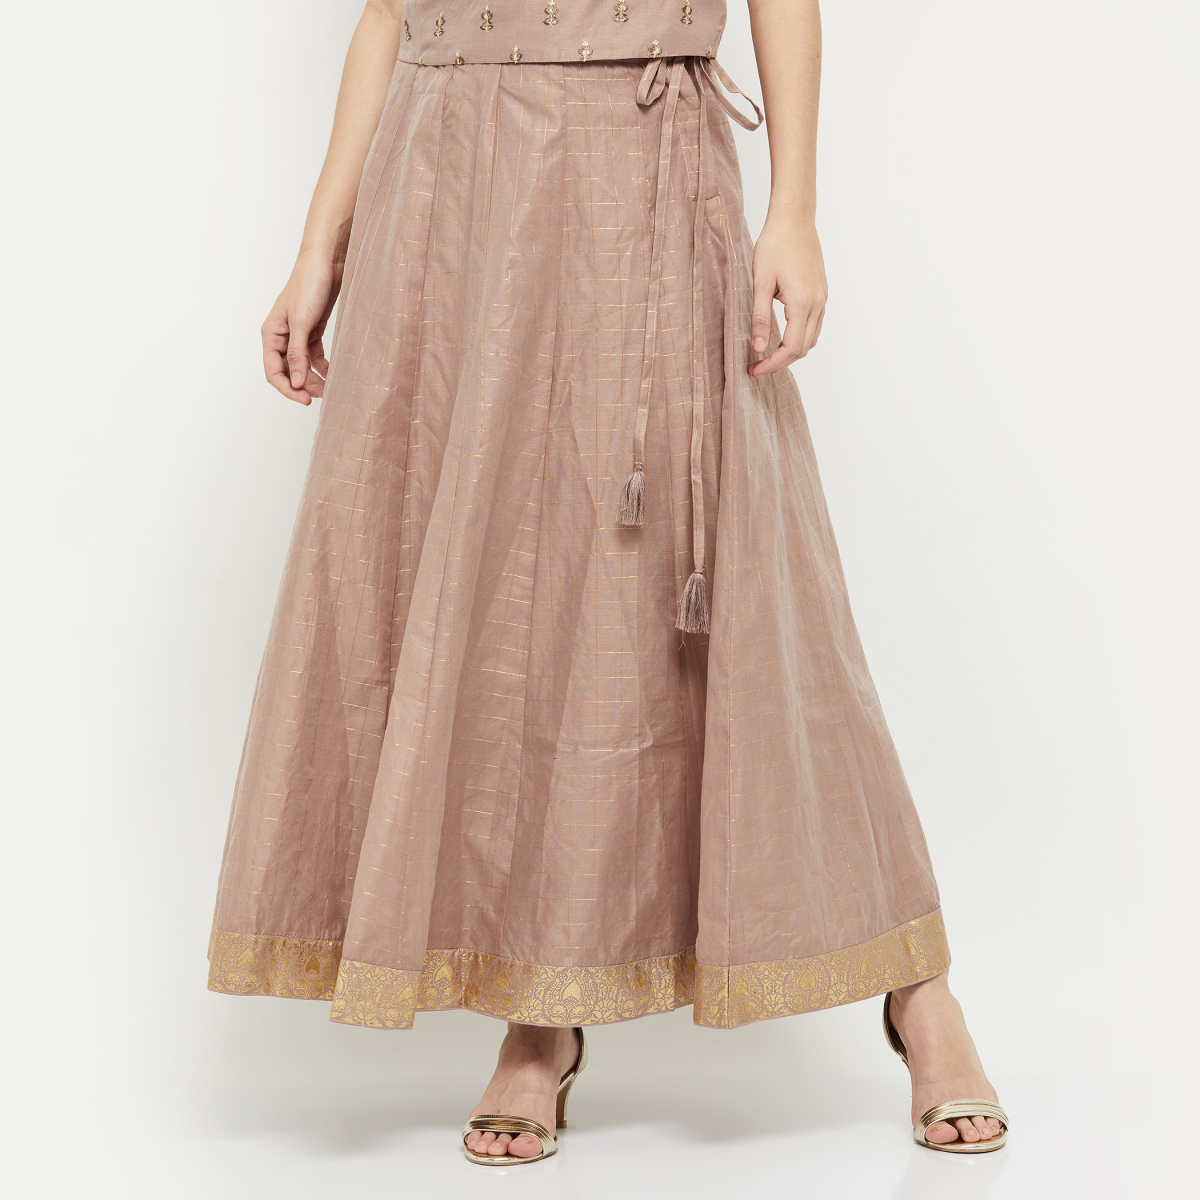 Buy Stylish Flared Long Skirt Indian Skirt Ethnic Skirt for Online in India   Etsy